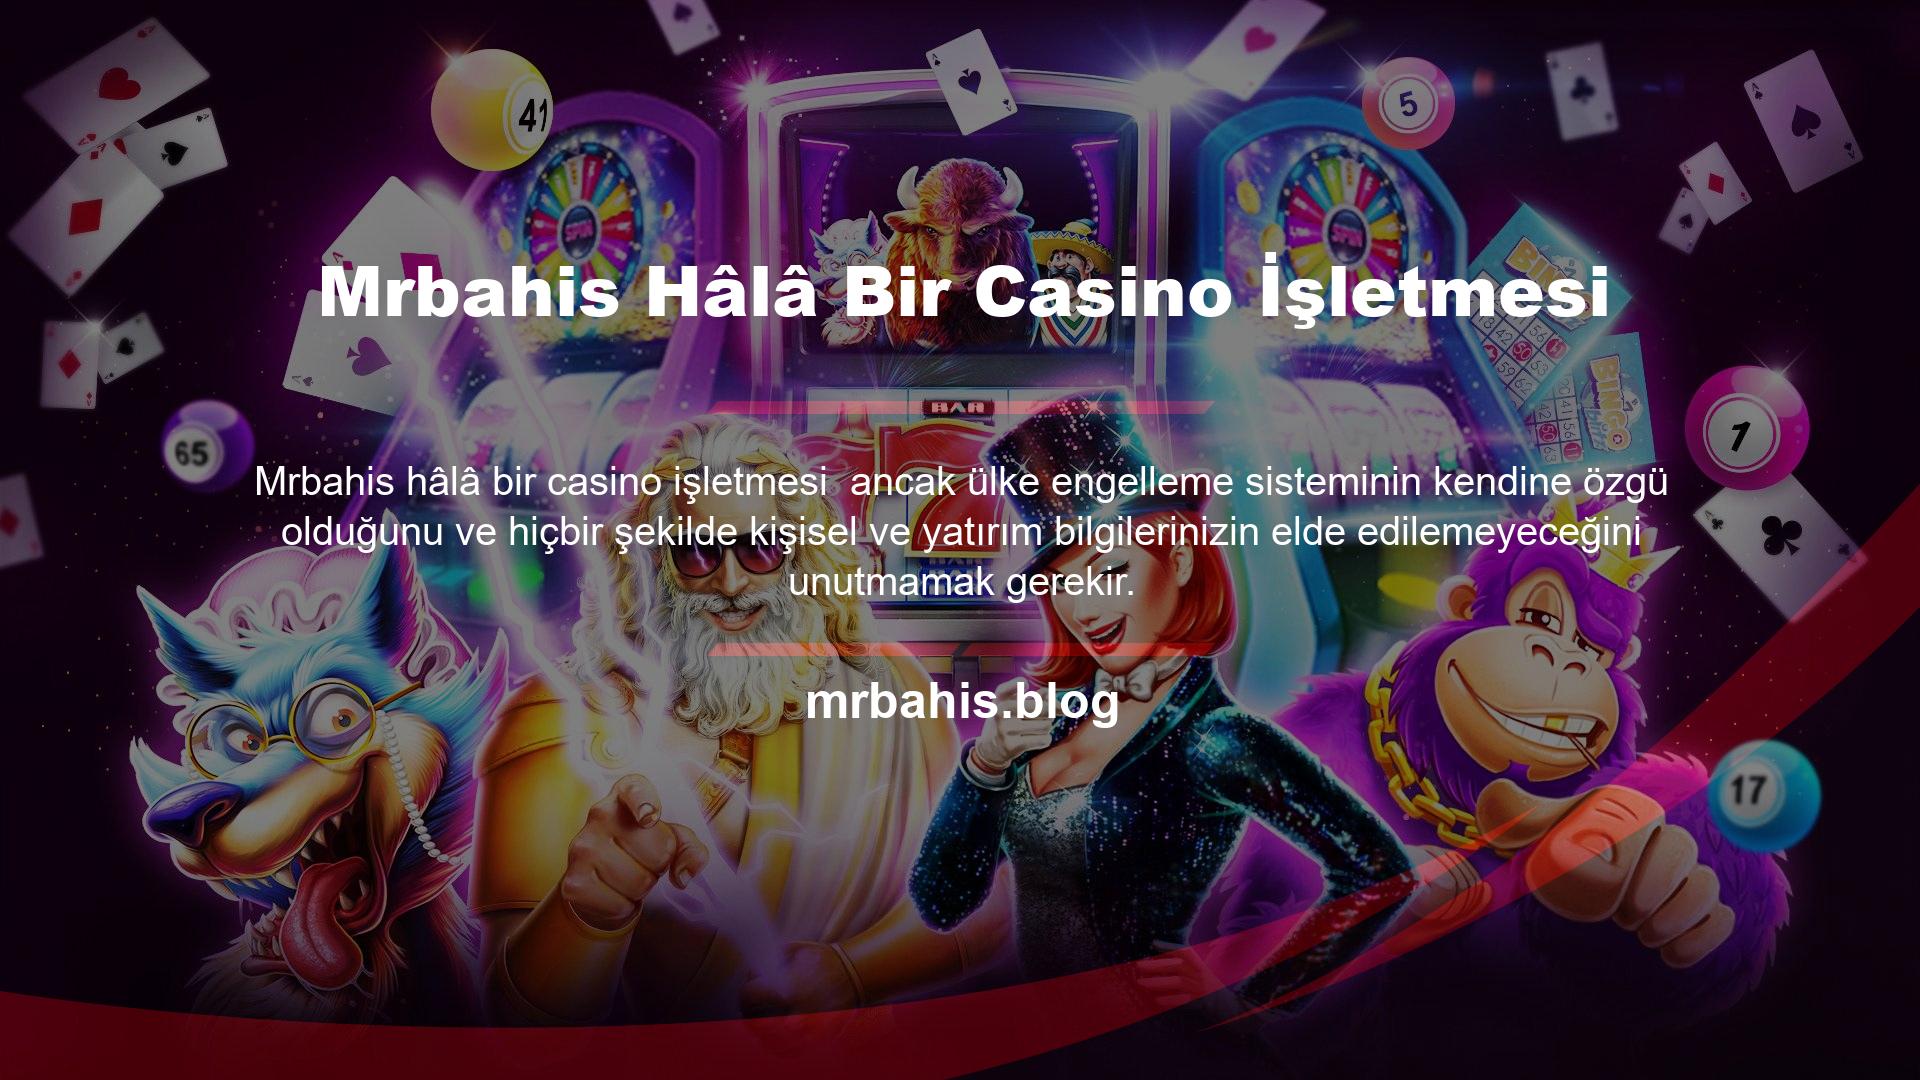 Mrbahis, casino meraklıları tarafından hedef alınmayı önlemek için sitenin tasarımının, içeriğinin ve bilgilerinin bütünlüğünü koruyacaktır Mrbahis hafta içi olağan adres değişikliği